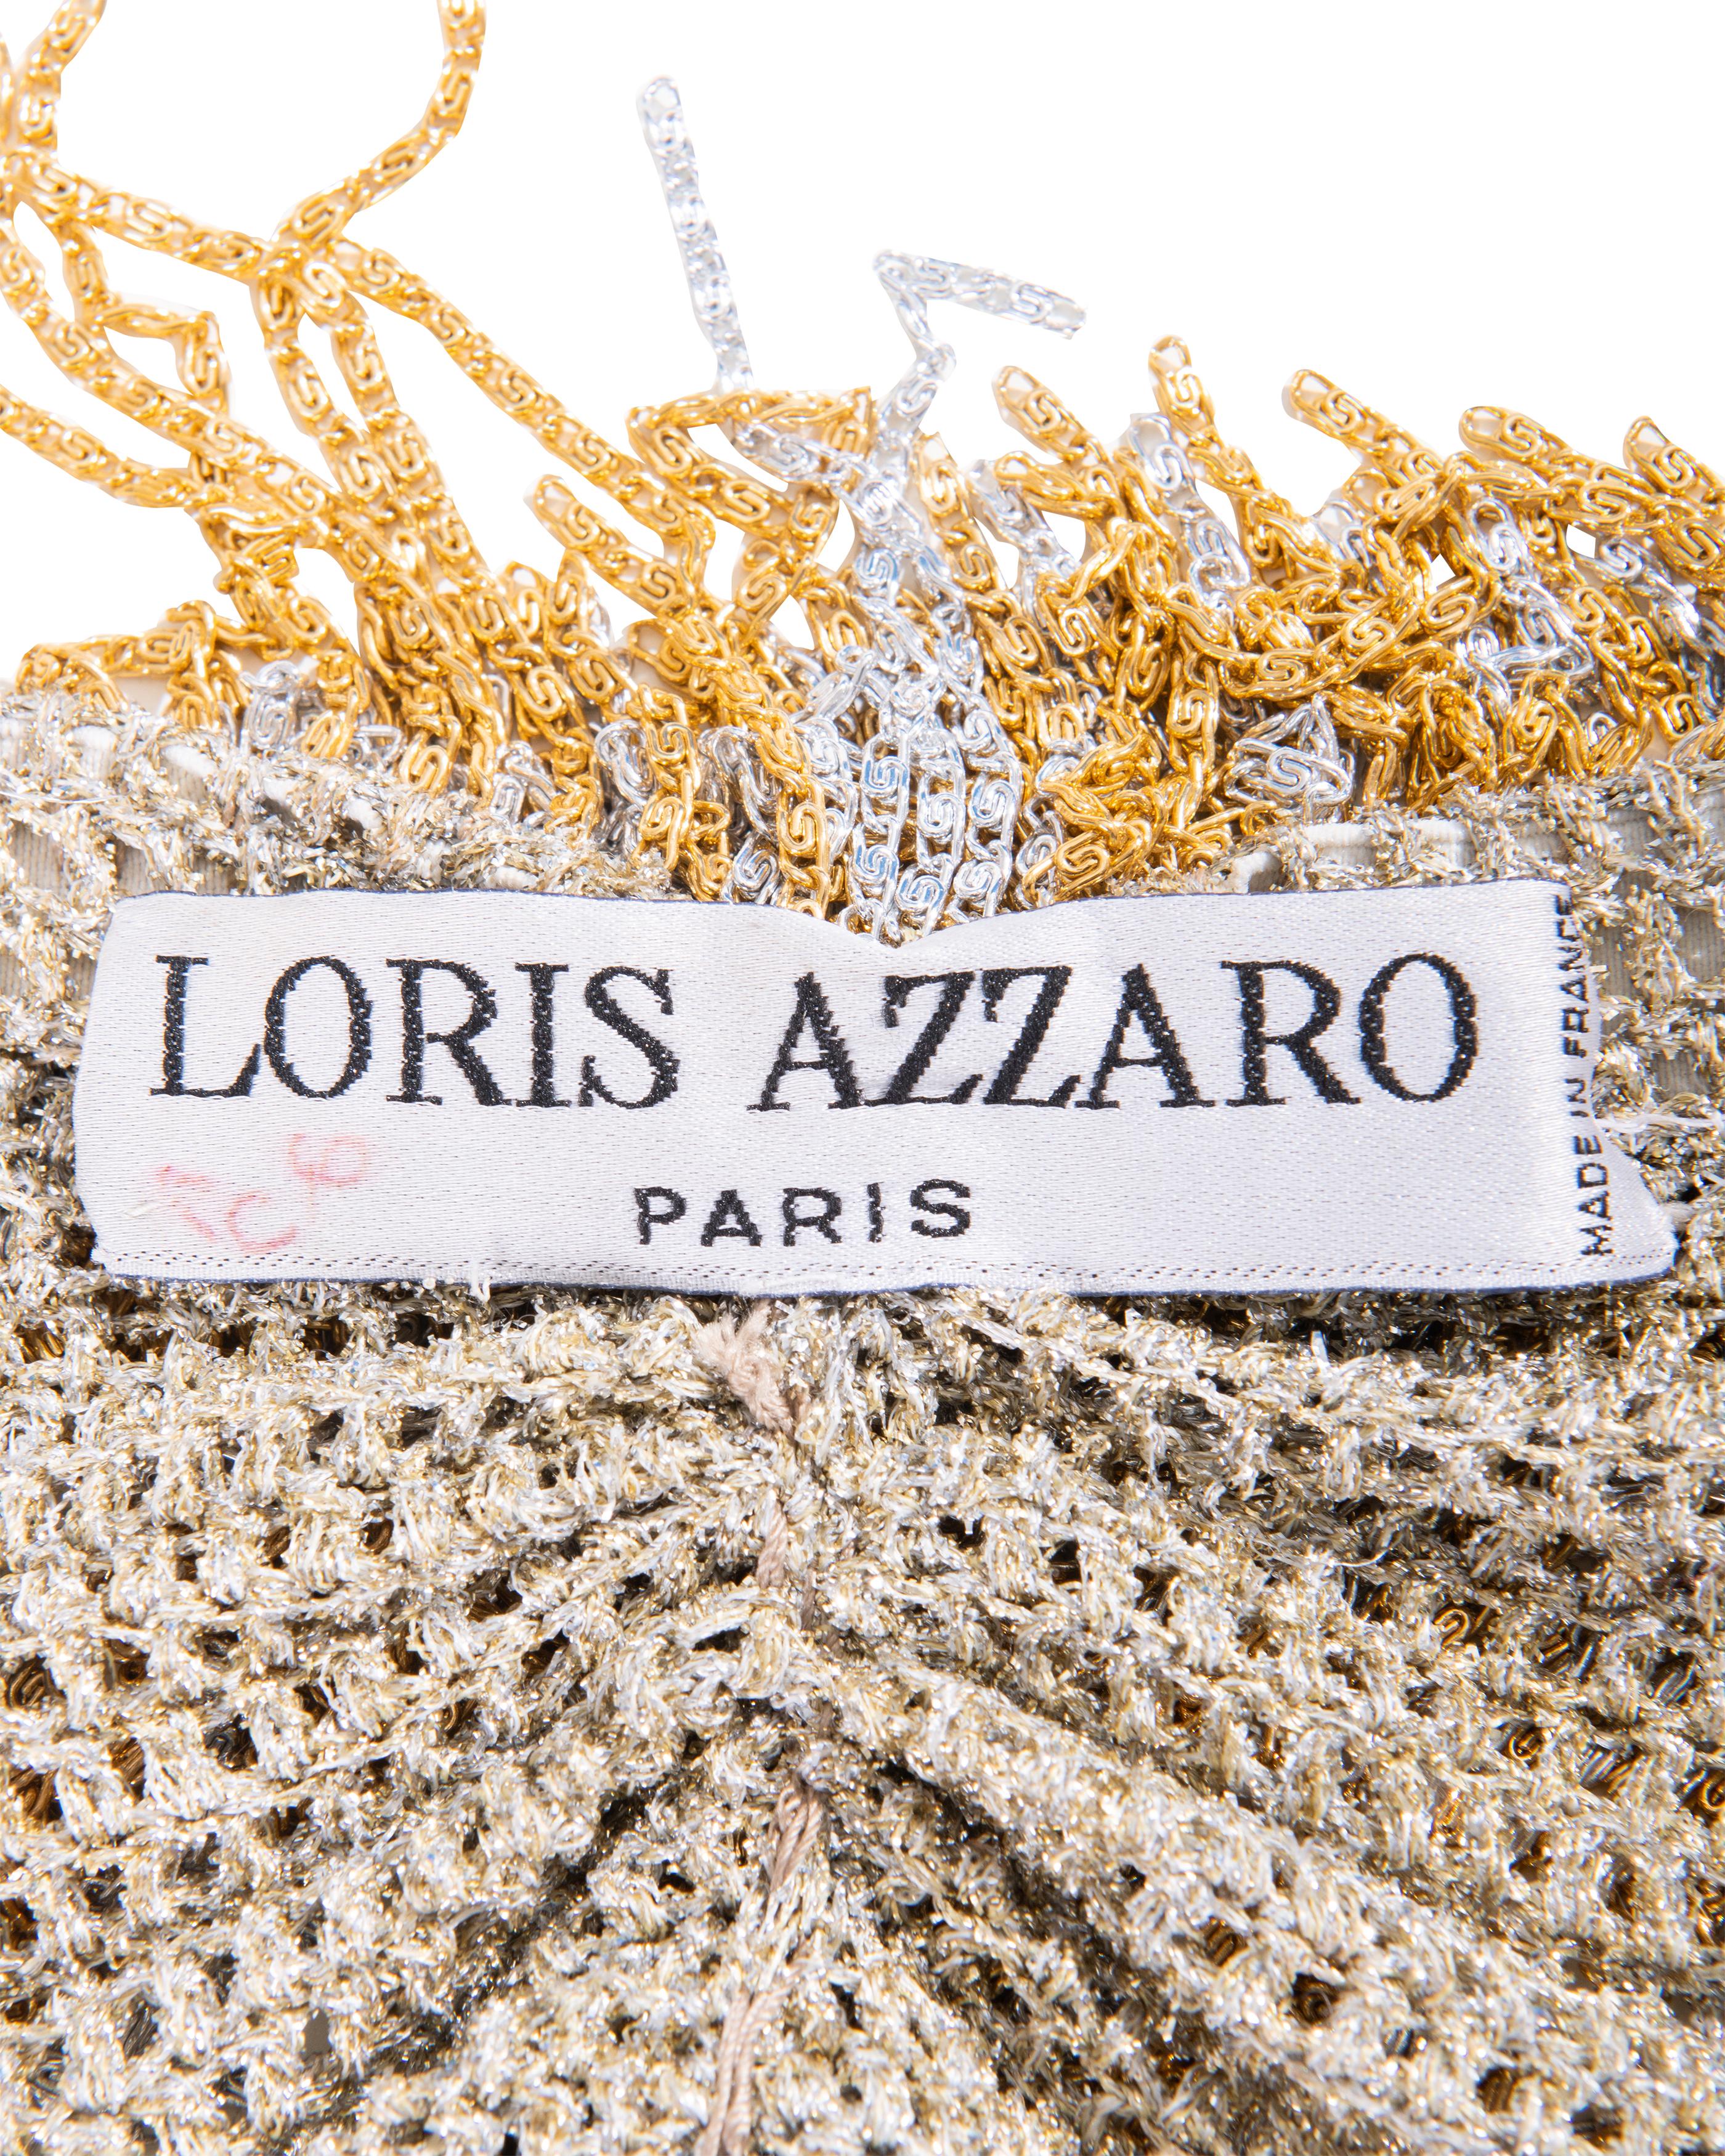 c. 1971 Mini robe à franges en chaîne argentée et dorée Loris Azzaro 9